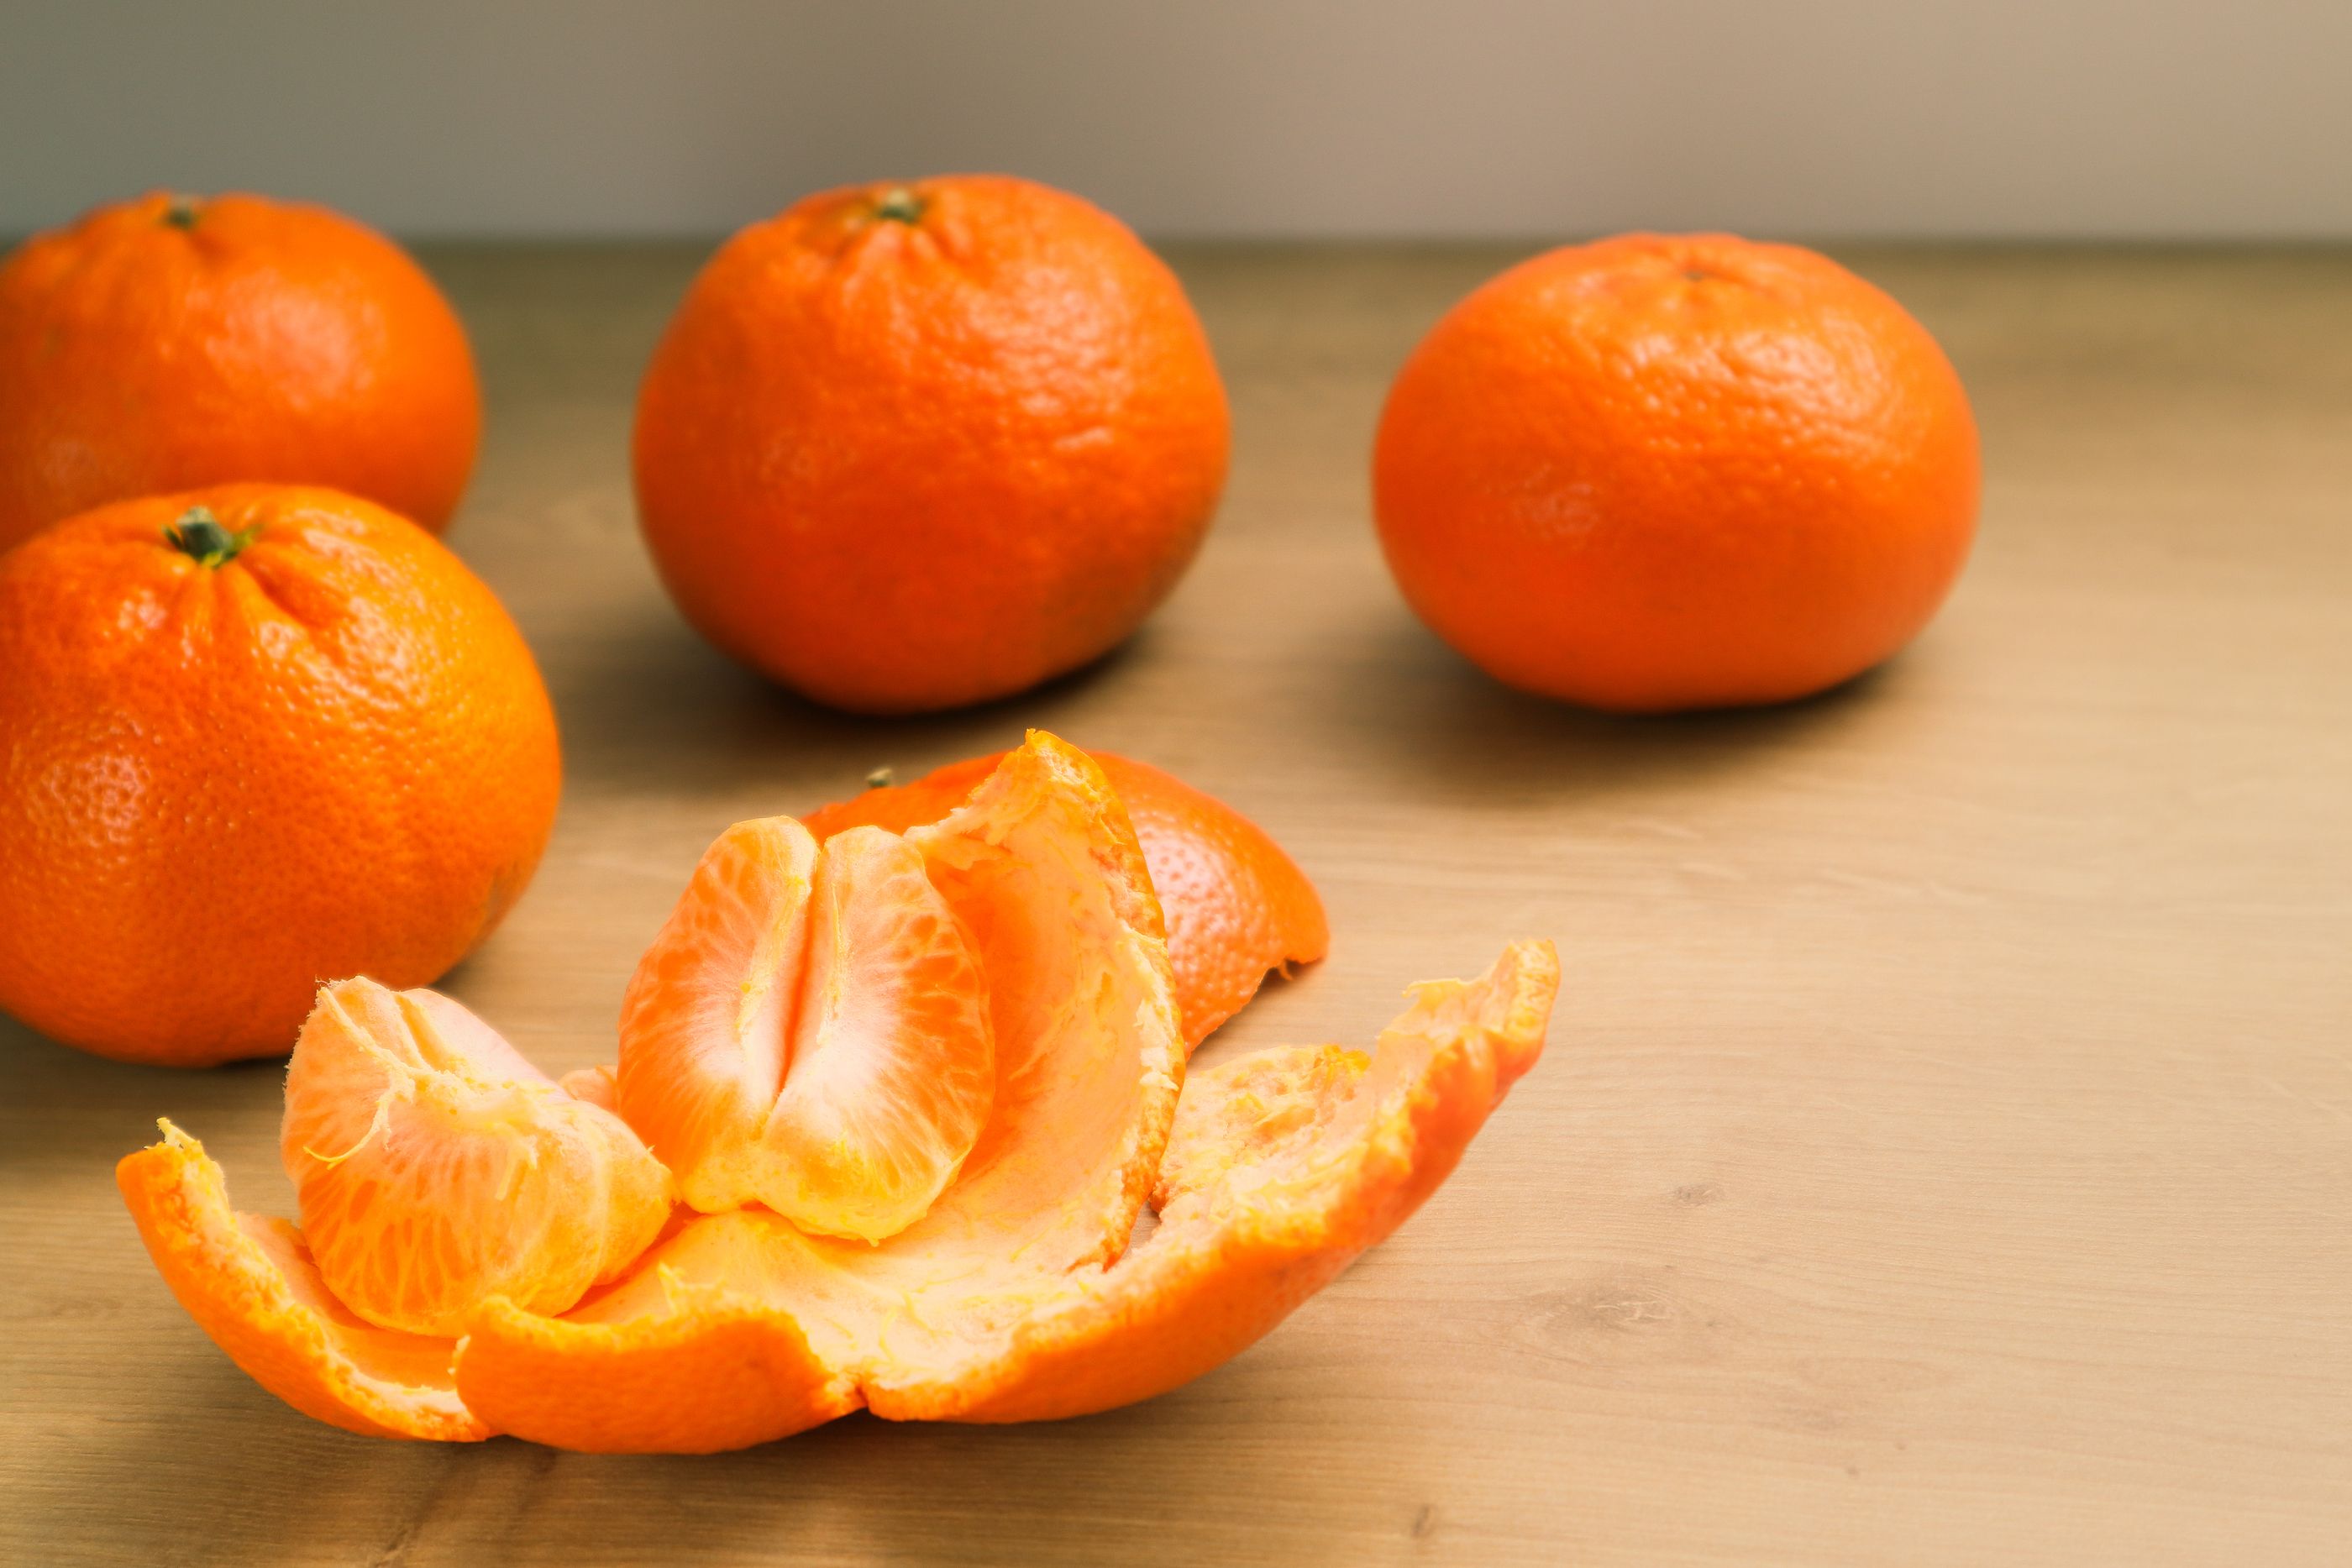 ¿Con o sin piel? Esta es la forma más saludable de comer la fruta. Foto: BIgstock